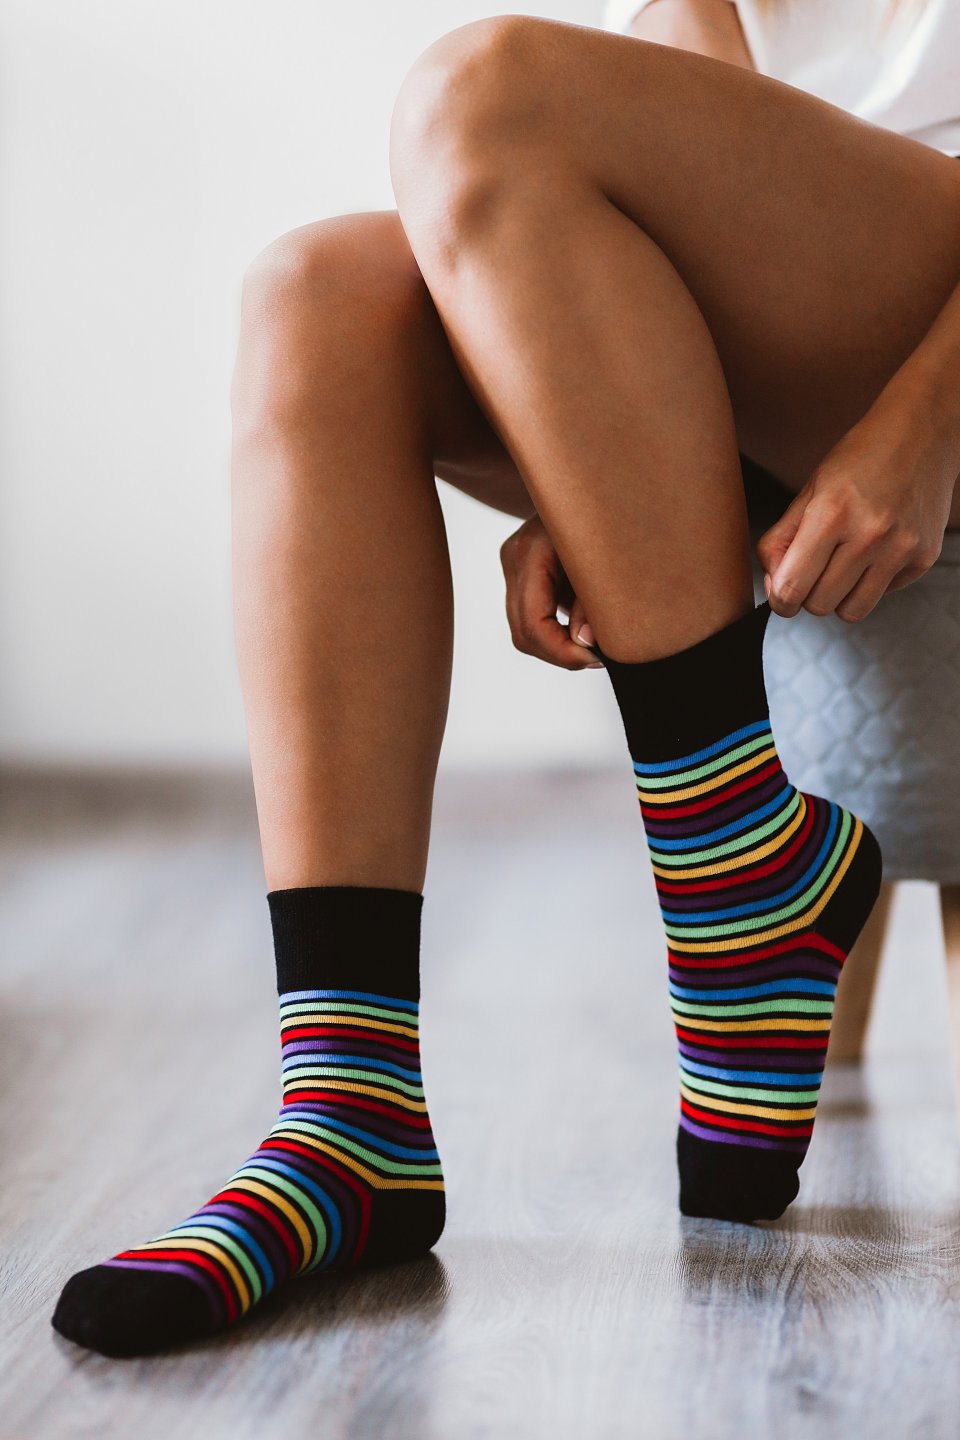 Barfuß-Socken - regenbogen